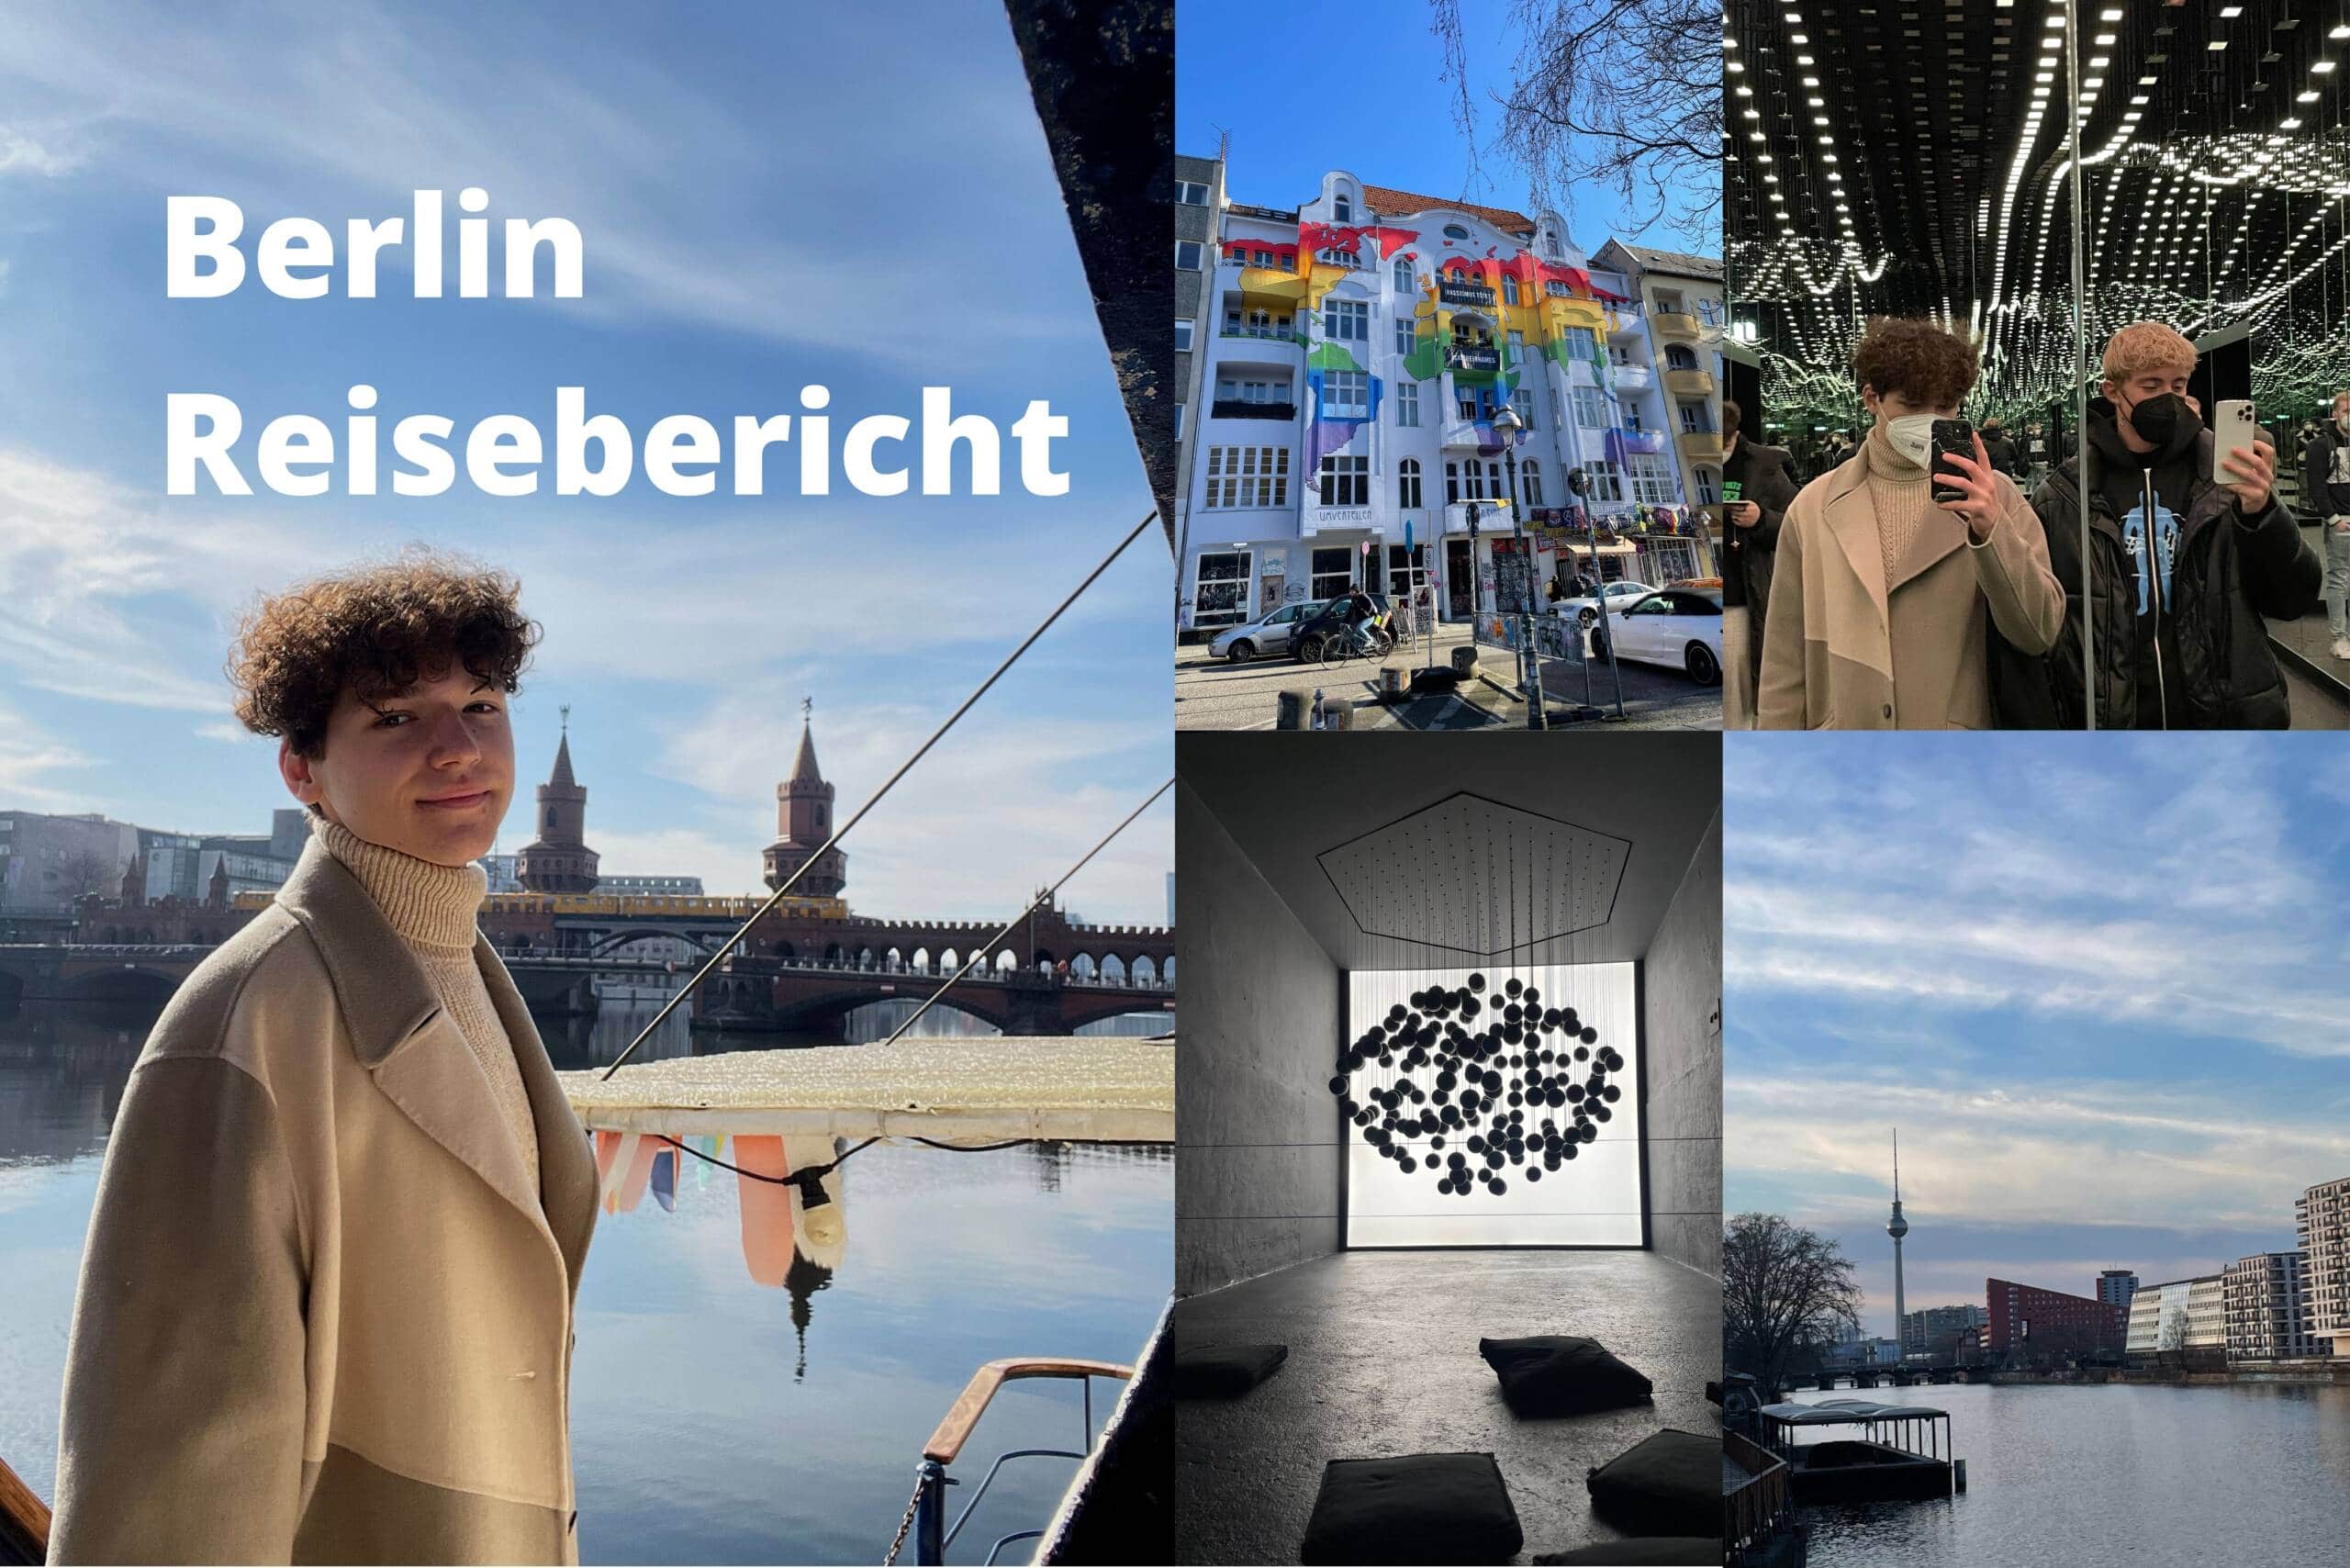 Berlin für junge Menschen | Reisebericht und Tipps